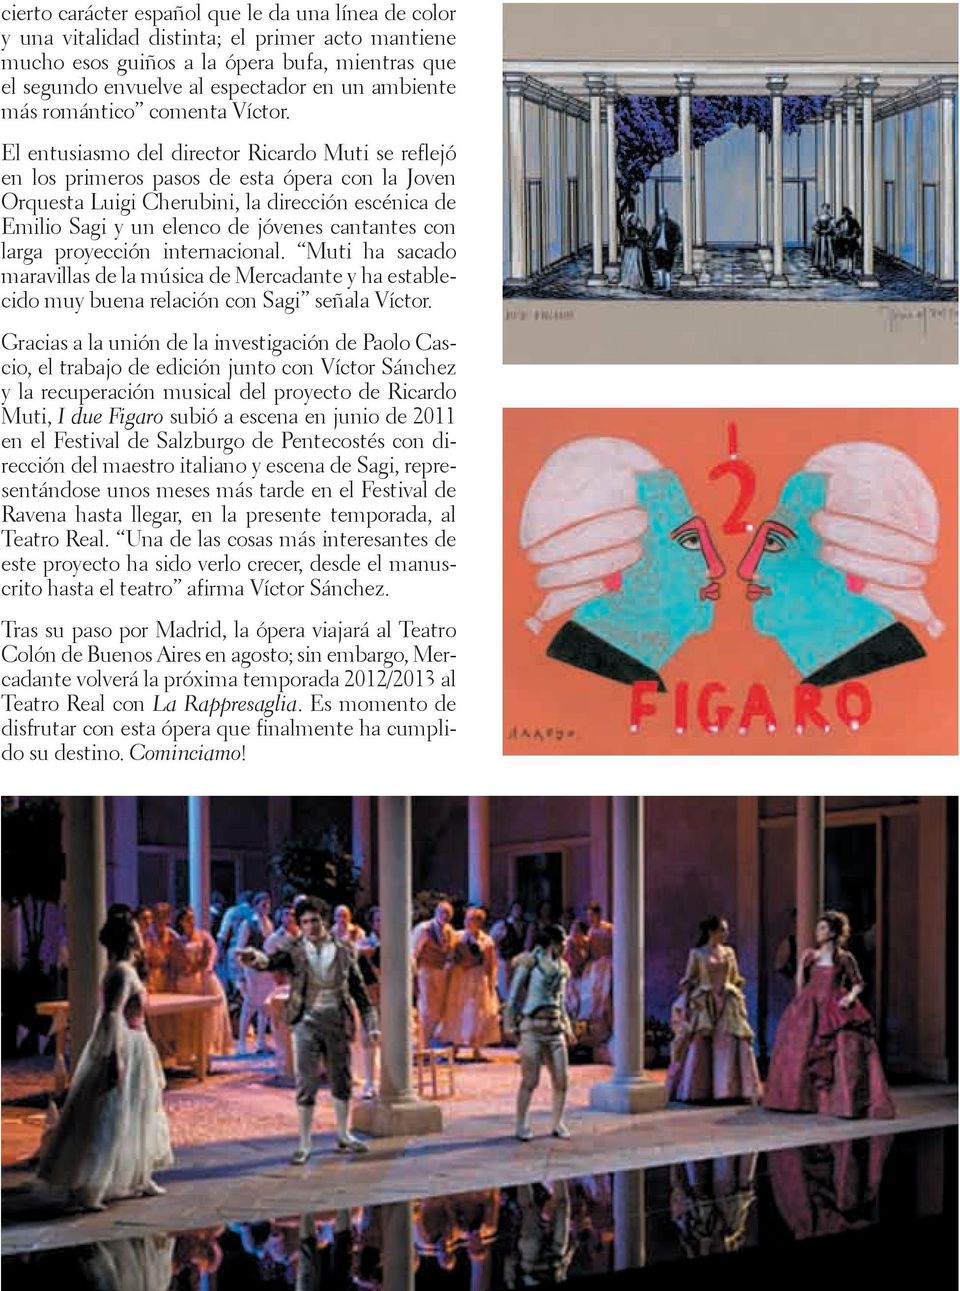 El entusiasmo del director Ricardo Muti se reflejó en los primeros pasos de esta ópera con la Joven Orquesta Luigi Cherubini, la dirección escénica de Emilio Sagi y un elenco de jóvenes cantantes con